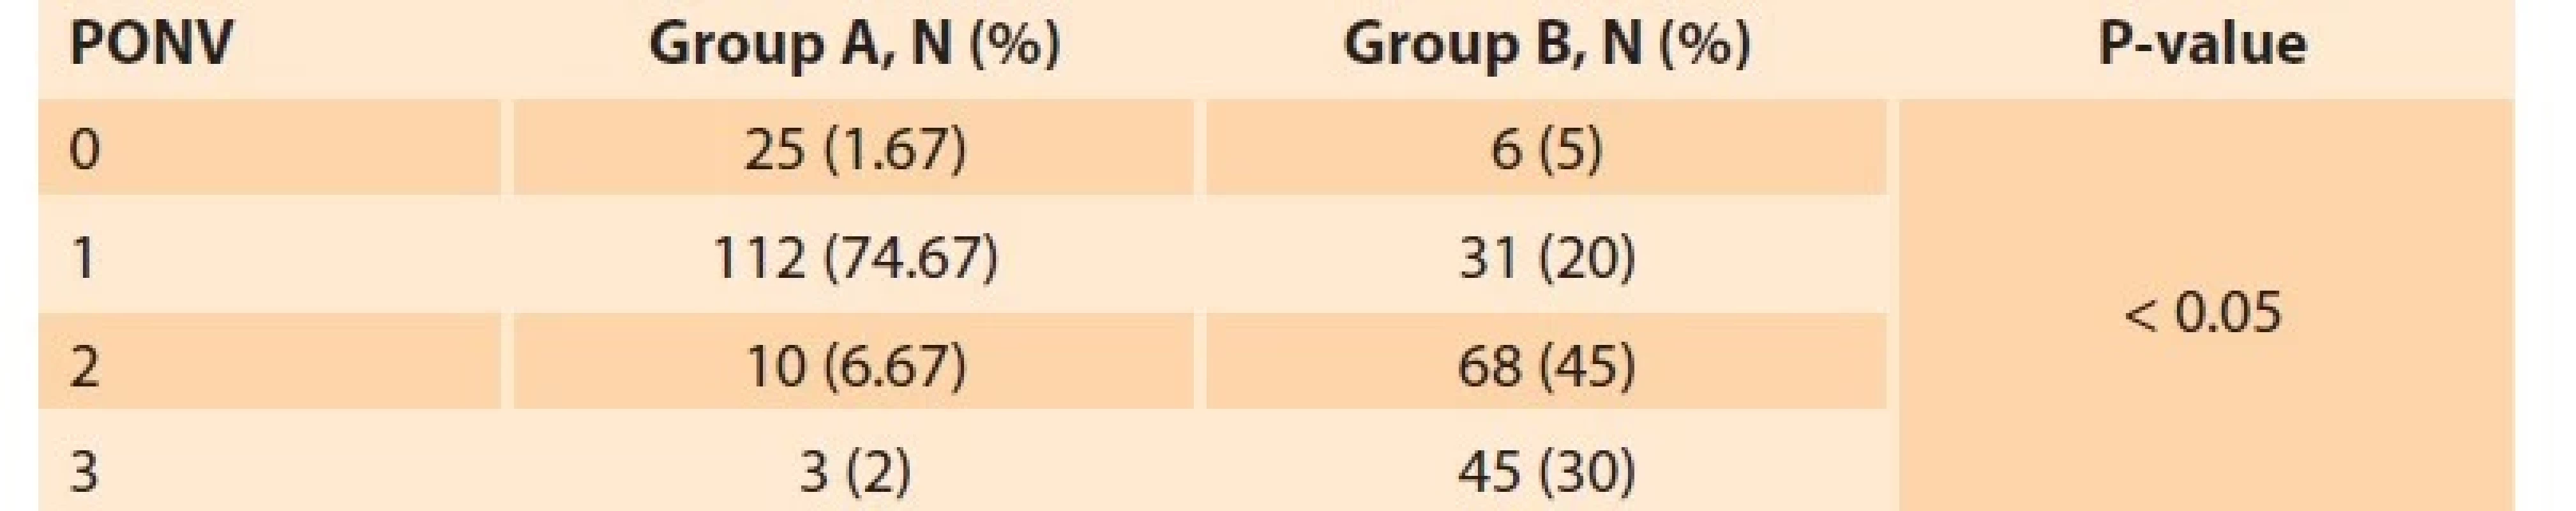 Comparison among the two studied groups regarding PONV score.<br>
Tab. 5. Srovnání mezi dvěma zkoumanými skupinami z hlediska PONV skóre.